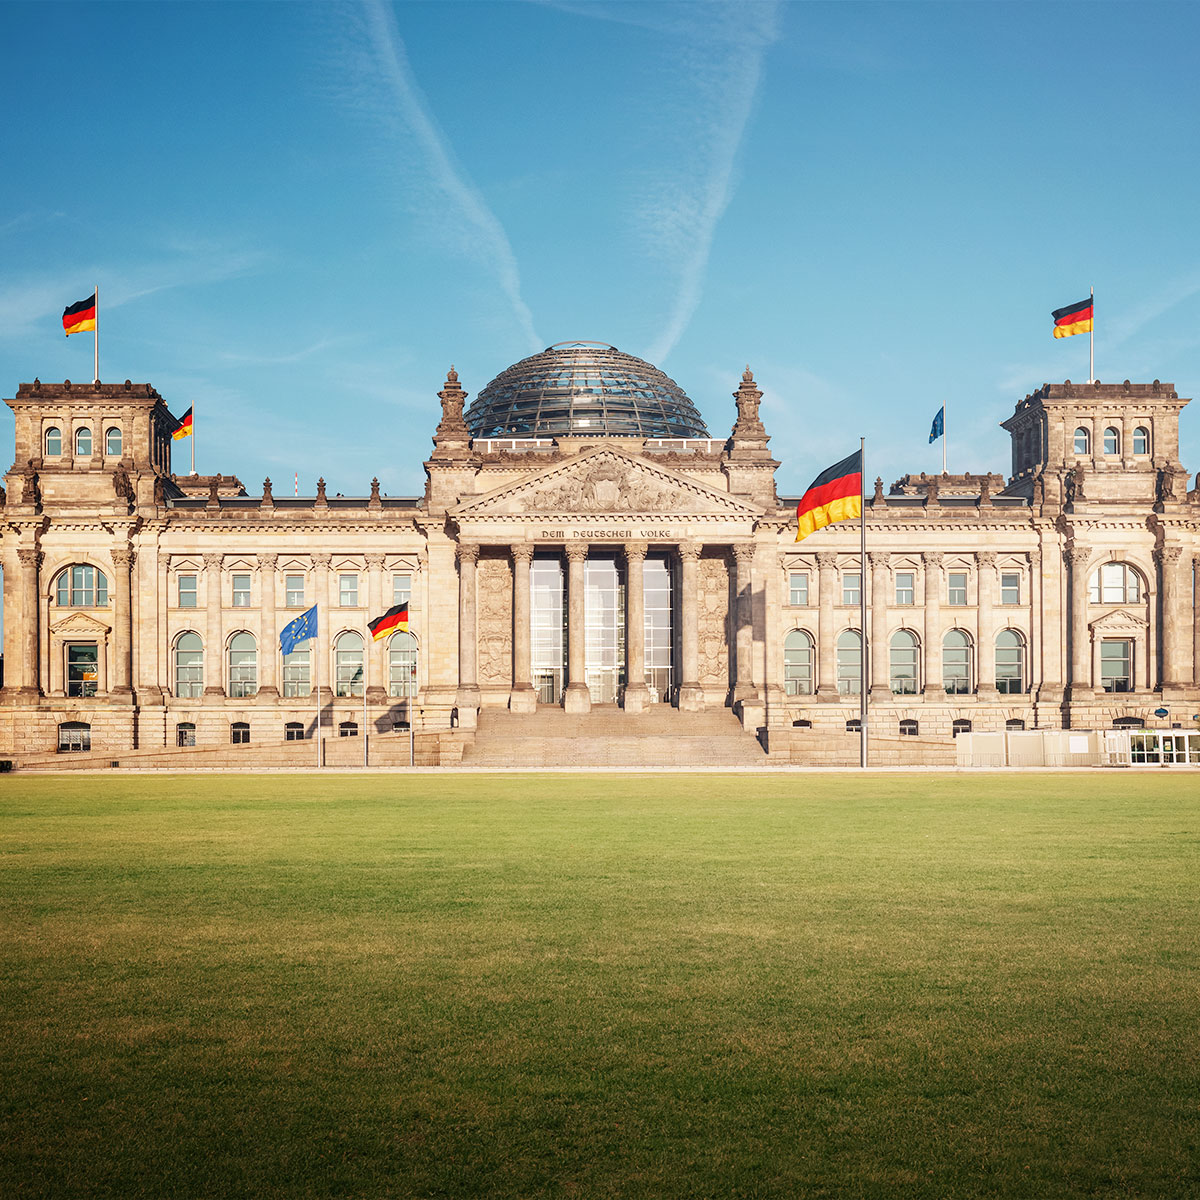 German Reichstag building